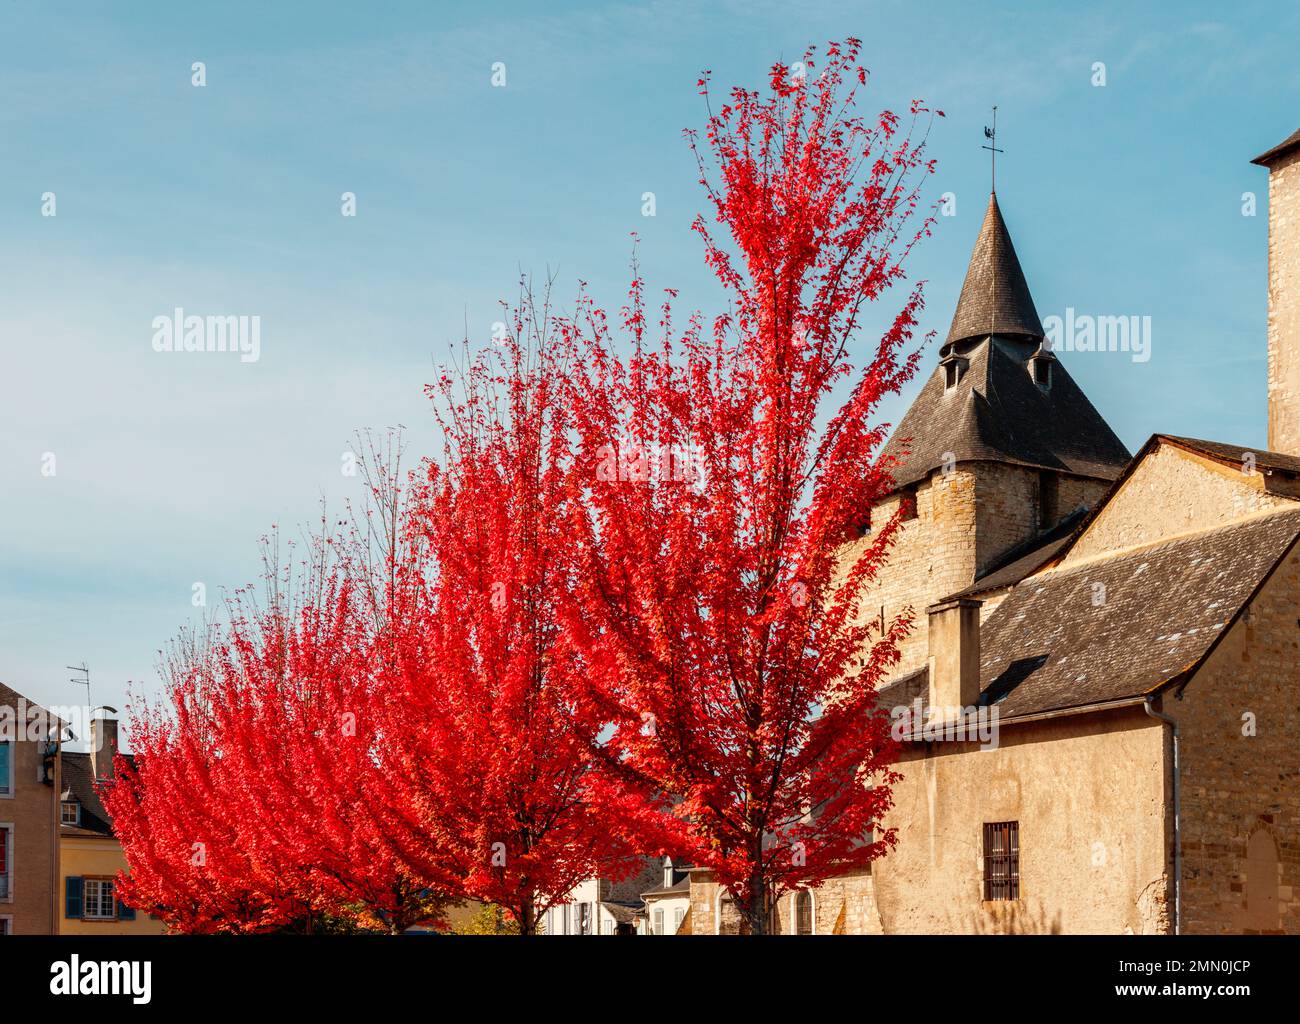 France, Pyrénées Atlantiques, Béarn, Oloron Sainte Marie, Cathédrale Sainte Marie, vue sur la cathédrale en automne avec des arbres aux feuilles rouges au premier plan Banque D'Images